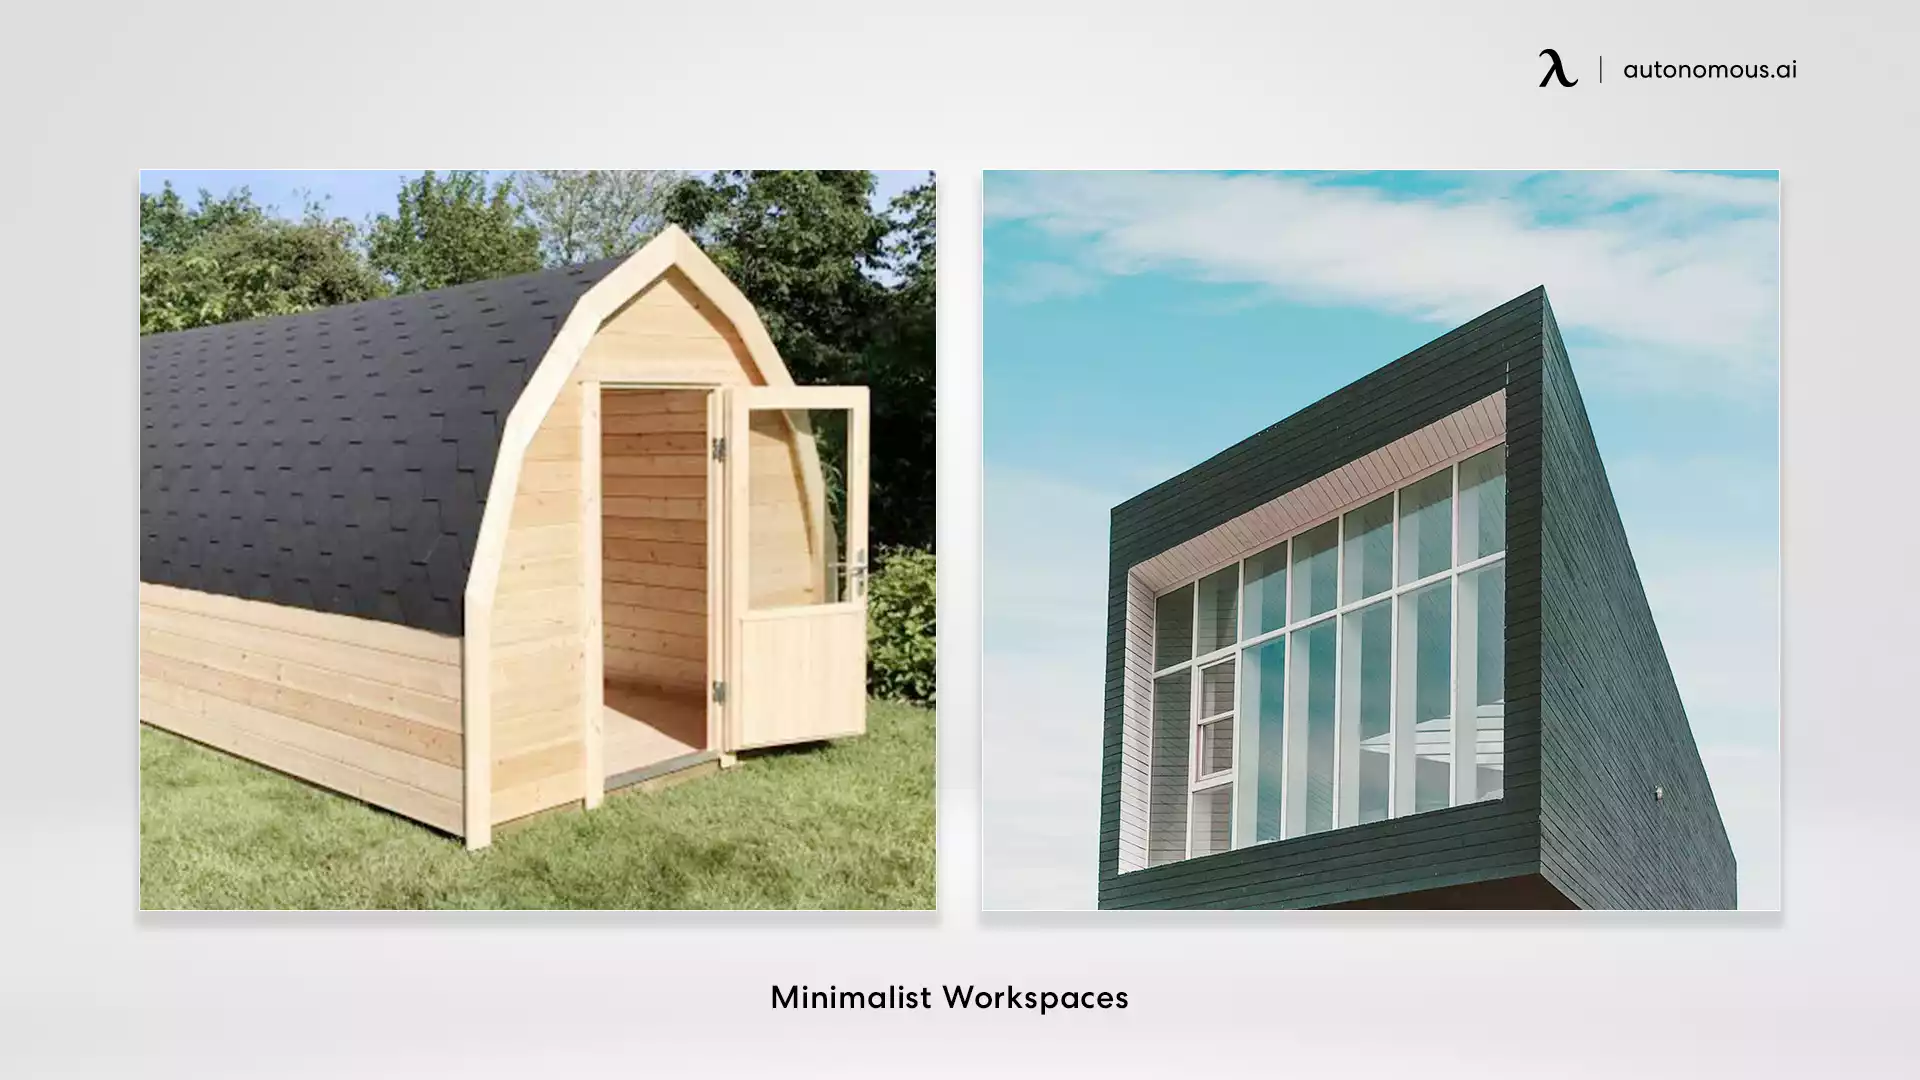 Minimalist Workspaces garden office ideas